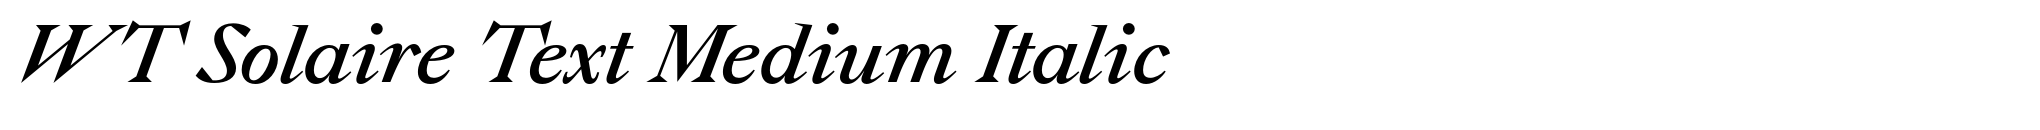 WT Solaire Text Medium Italic image